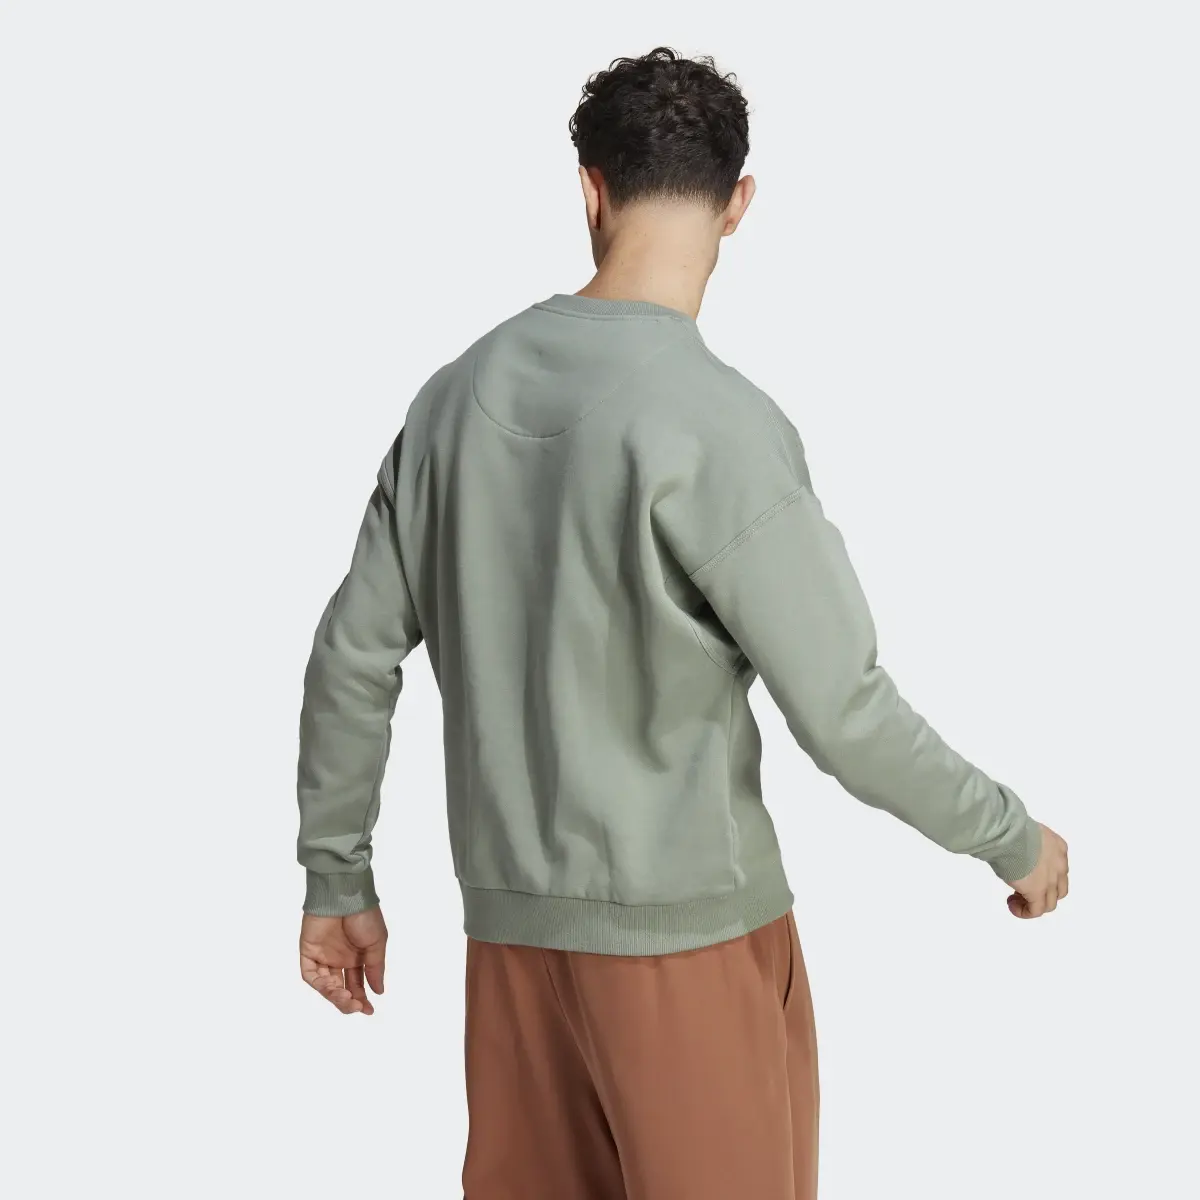 Adidas Lounge Fleece Sweatshirt. 3